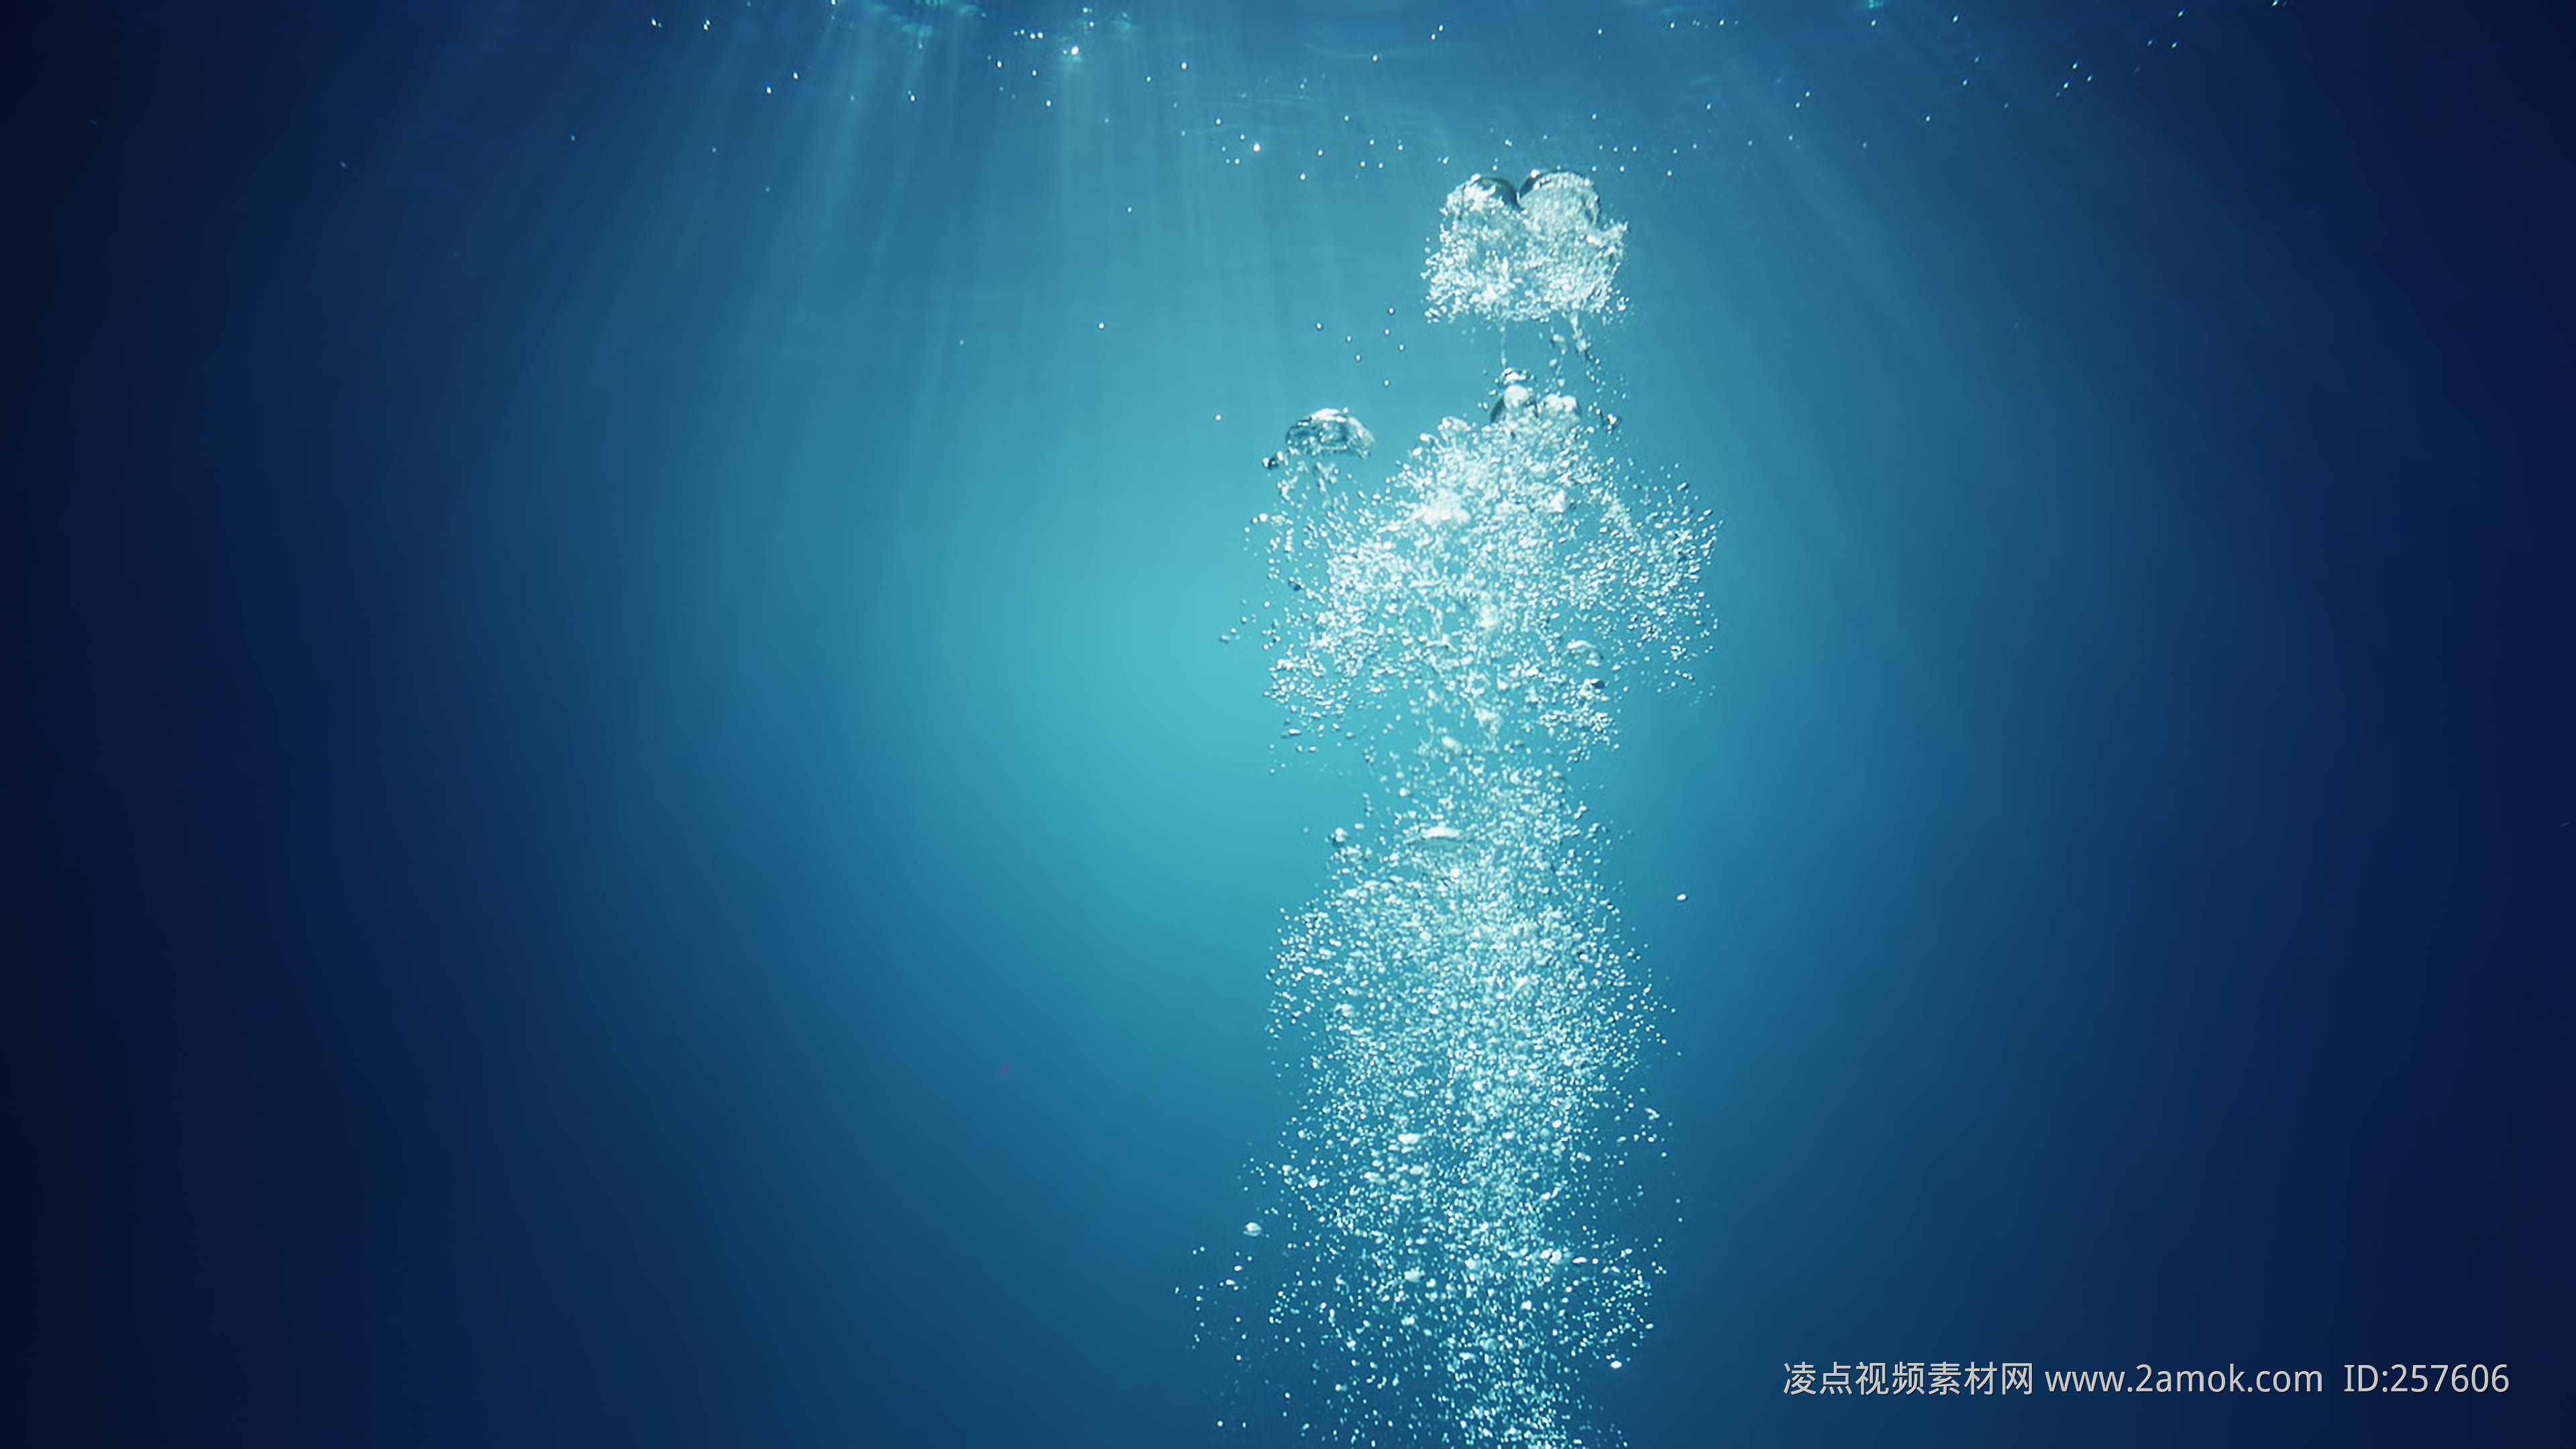 阳光穿透海面高清图片 - 素材中国16素材网